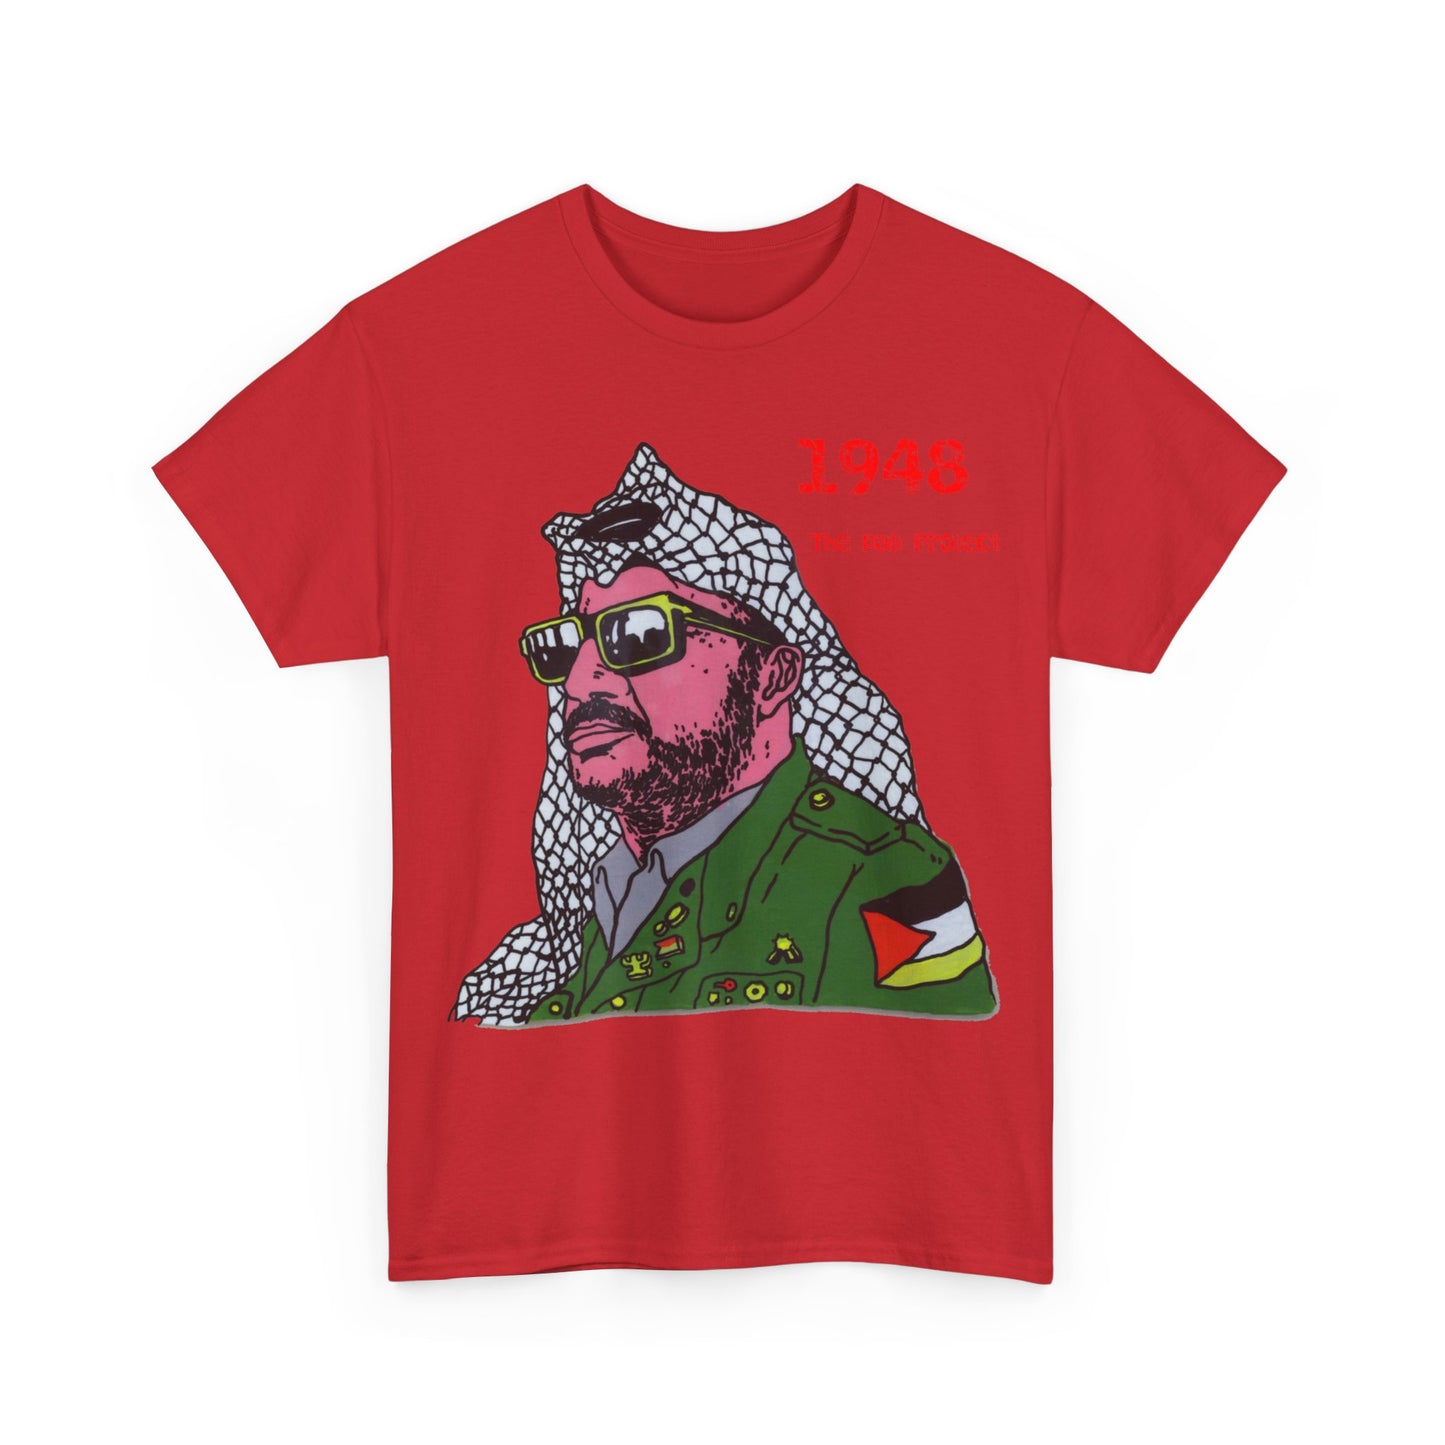 The Arafat T